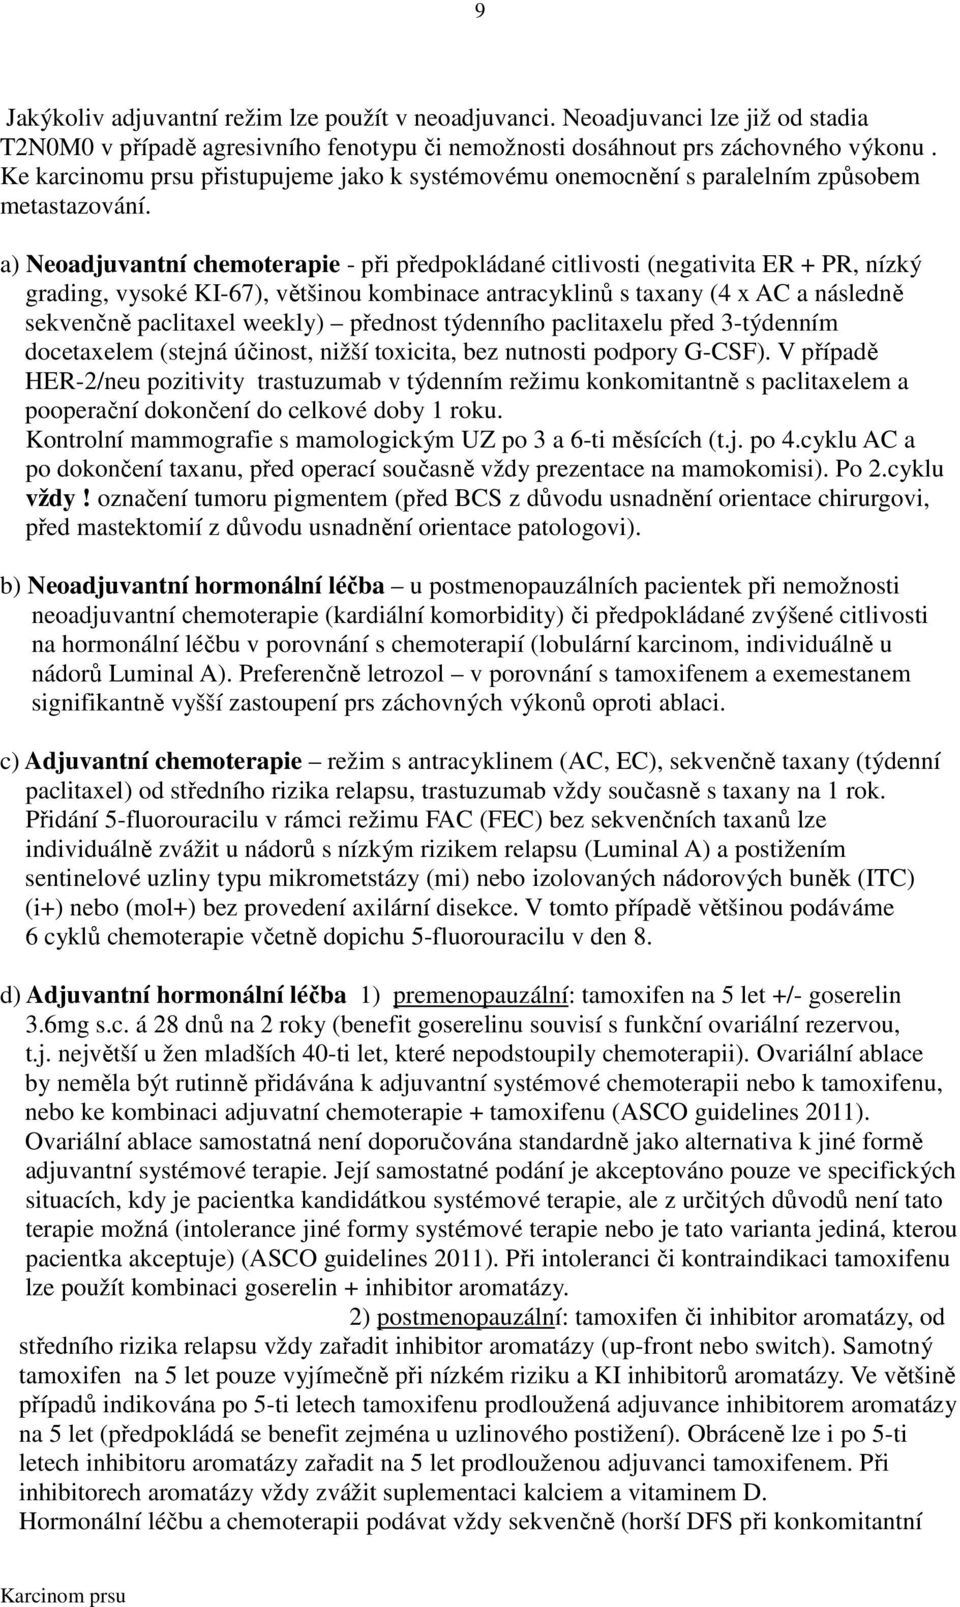 a) Neoadjuvantní chemoterapie - při předpokládané citlivosti (negativita ER + PR, nízký grading, vysoké KI-67), většinou kombinace antracyklinů s taxany (4 x AC a následně sekvenčně paclitaxel